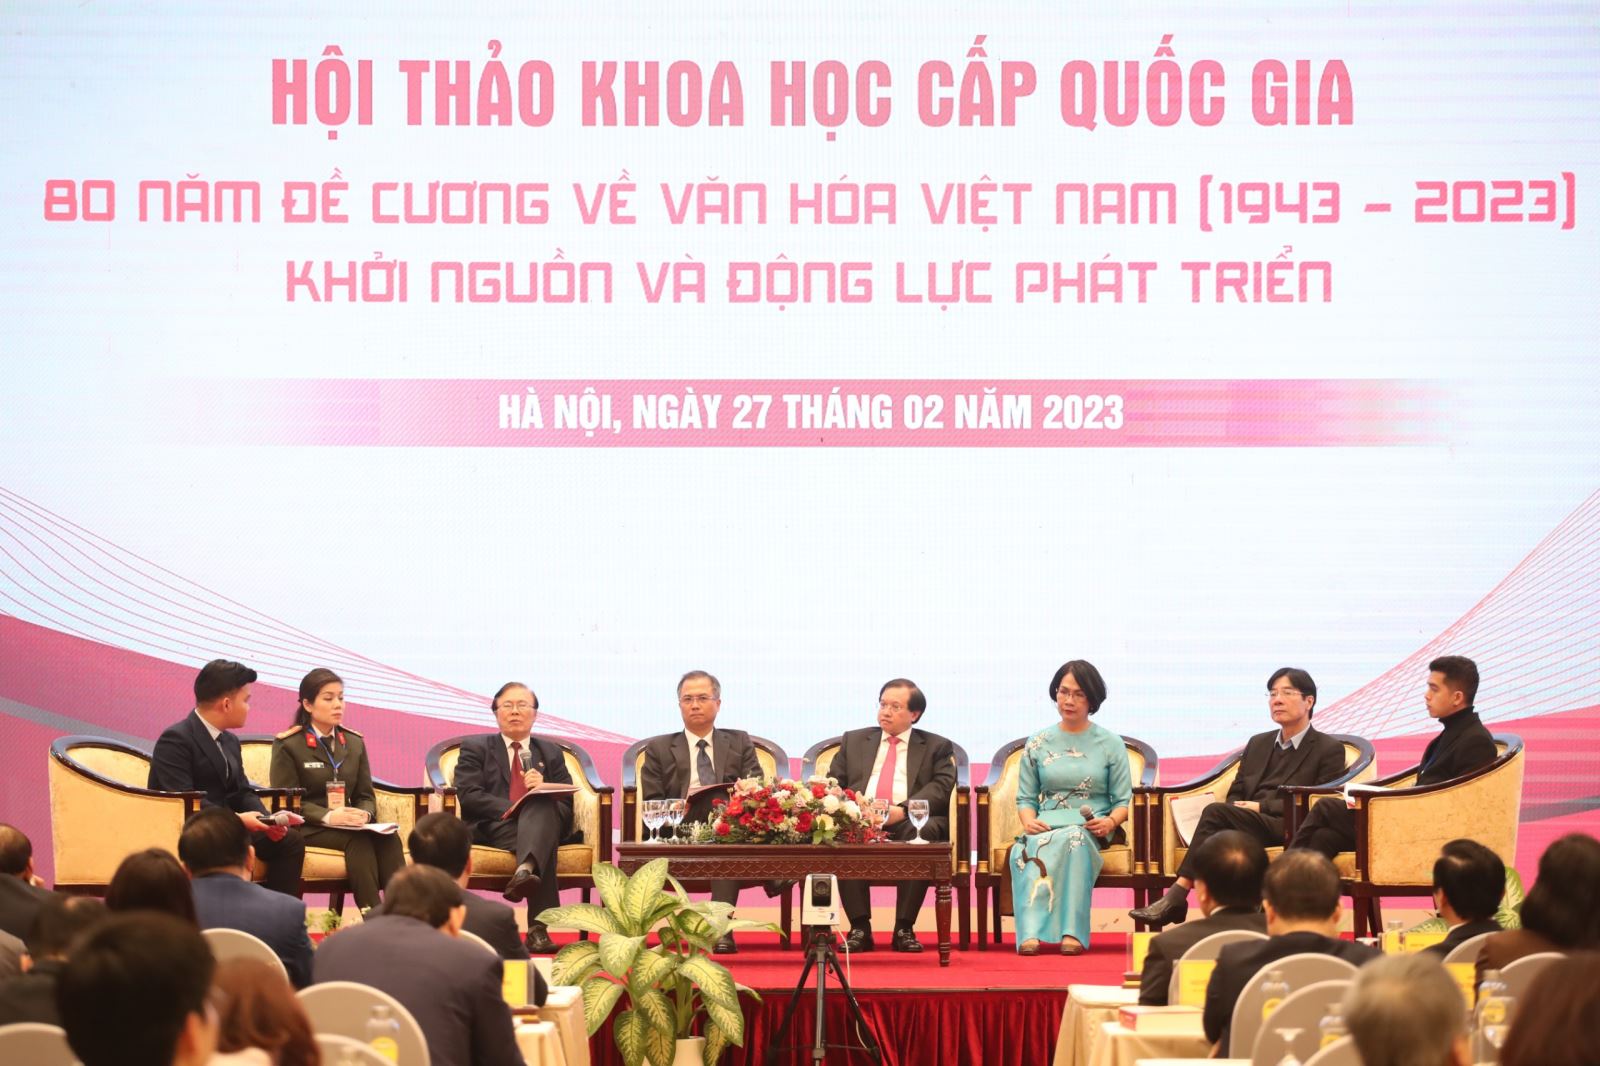 Tiếp tục kế thừa và phát triển các quan điểm của “Đề cương về văn hóa Việt Nam” trong xã hội hiện nay